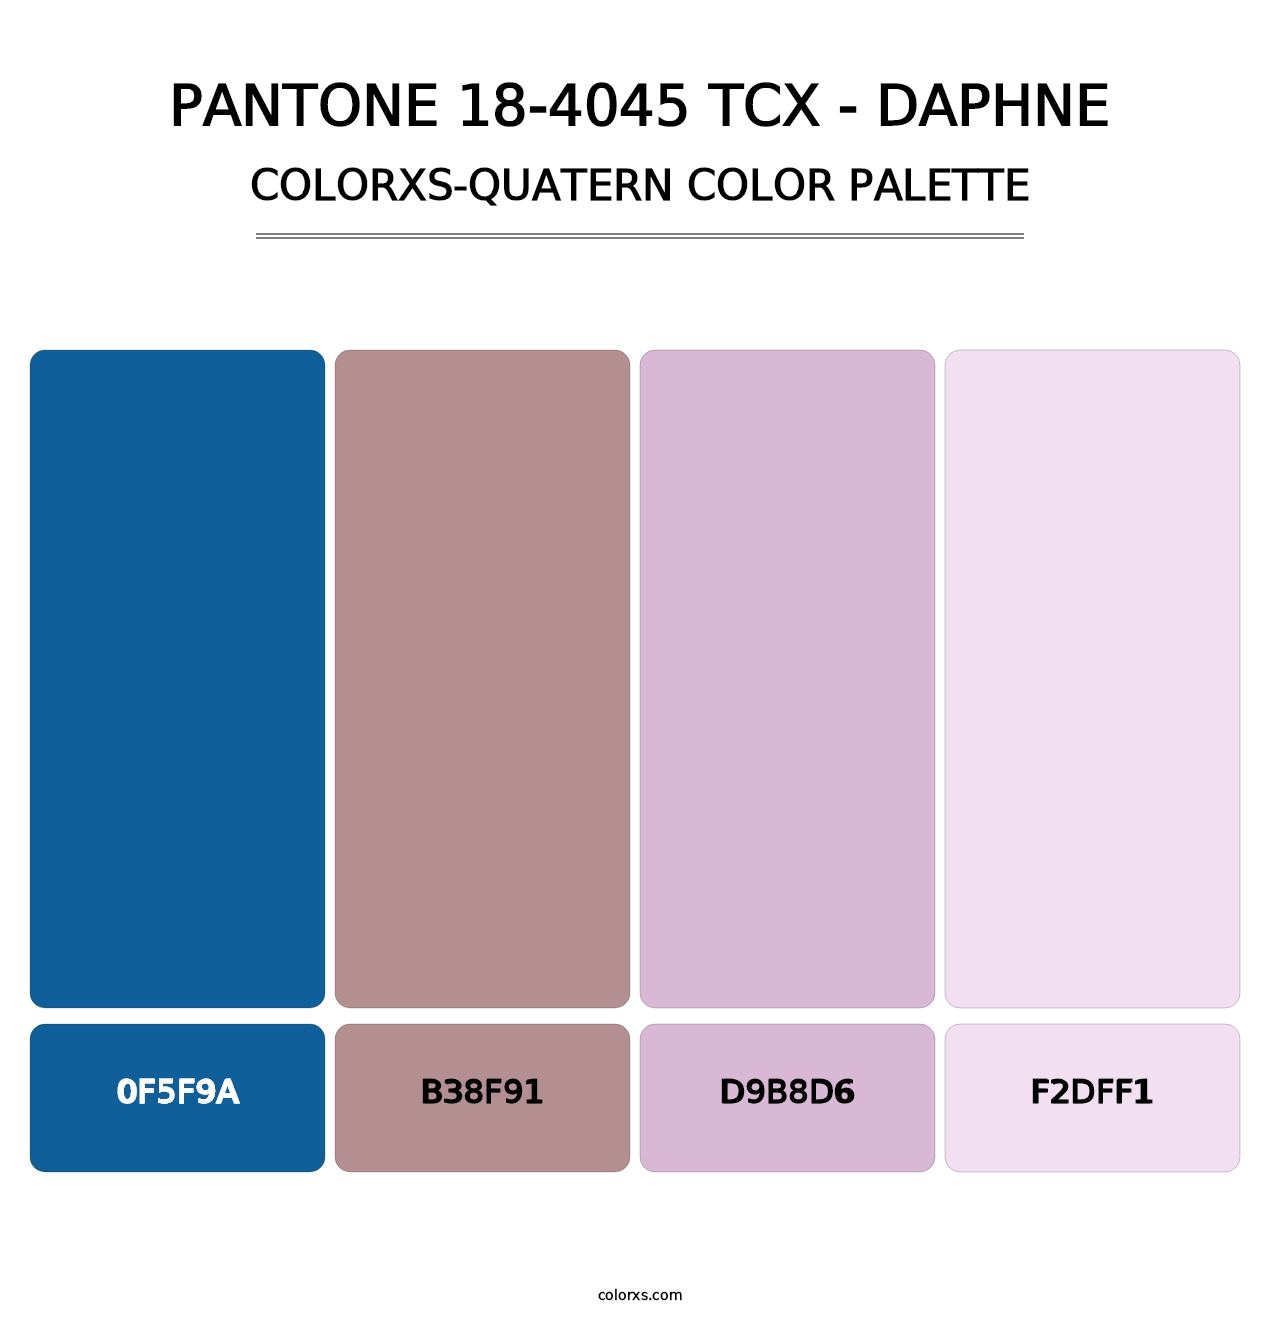 PANTONE 18-4045 TCX - Daphne - Colorxs Quatern Palette